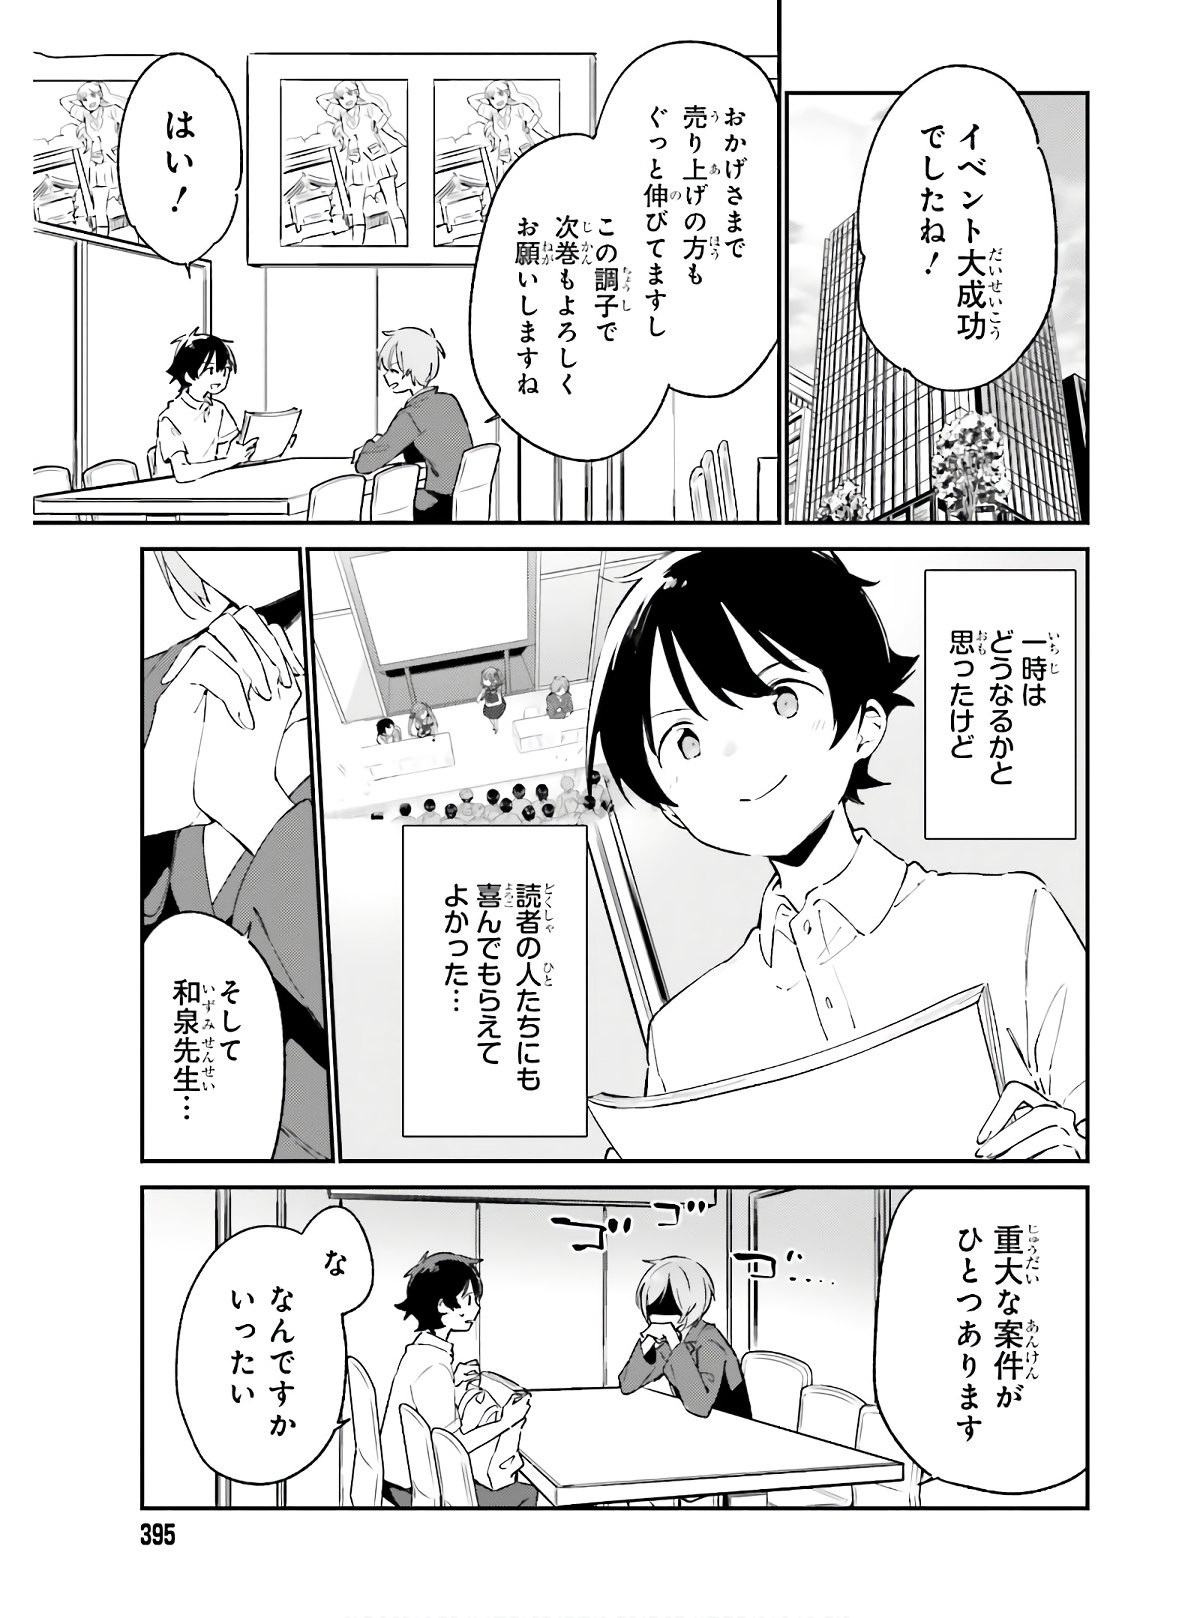 Ero Manga Sensei - Chapter 68 - Page 3